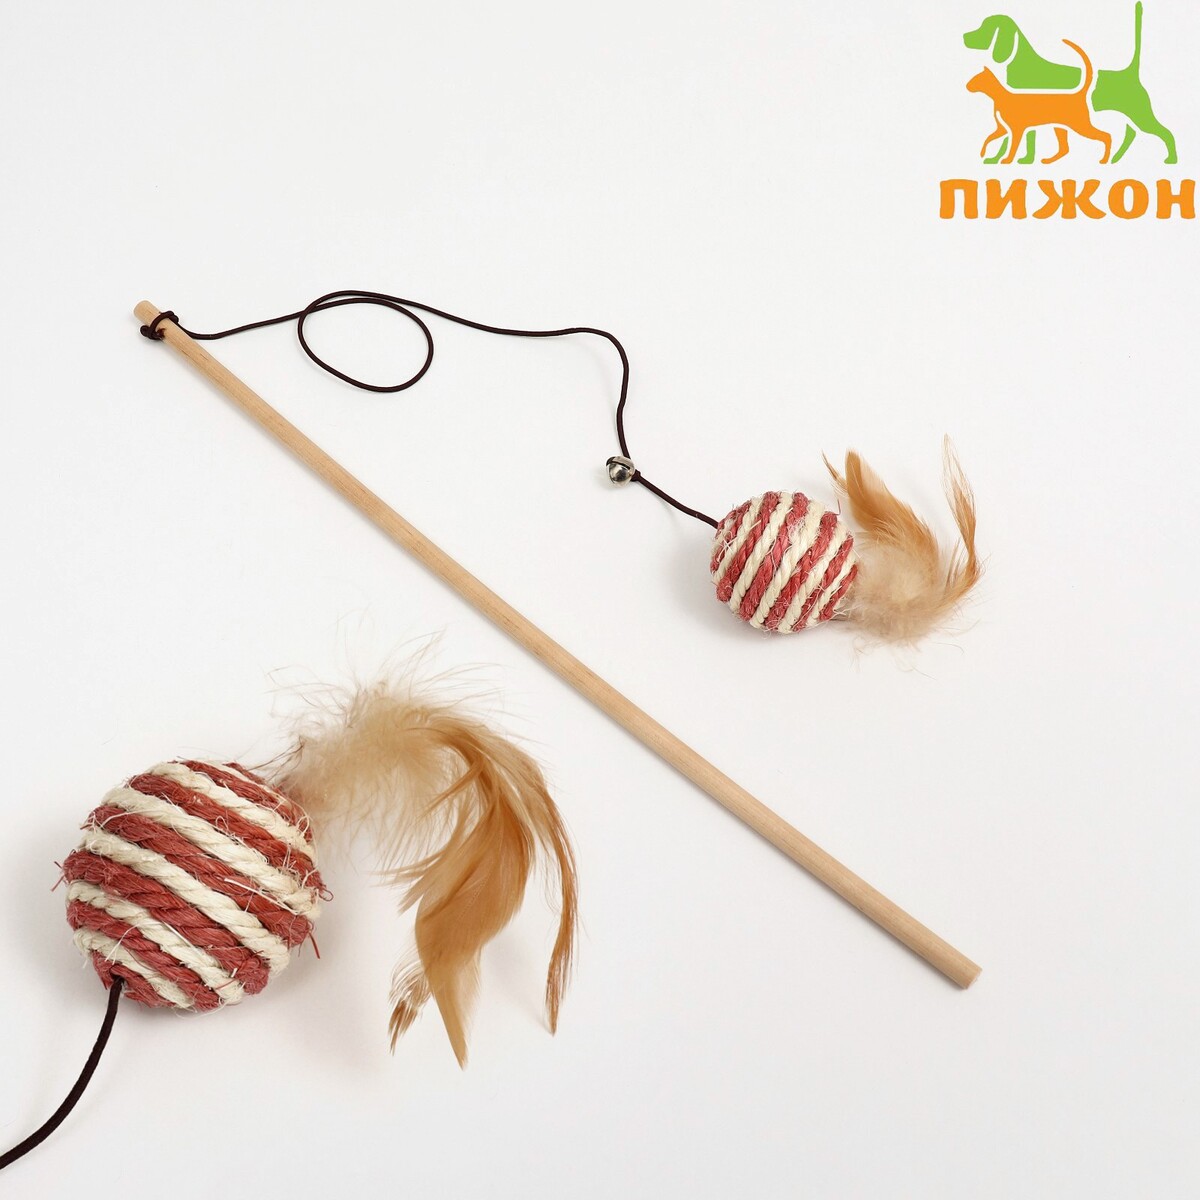 Дразнилка-удочка дразнилка удочка с плетеным шариком и ными перьями на деревянной ручке голубой